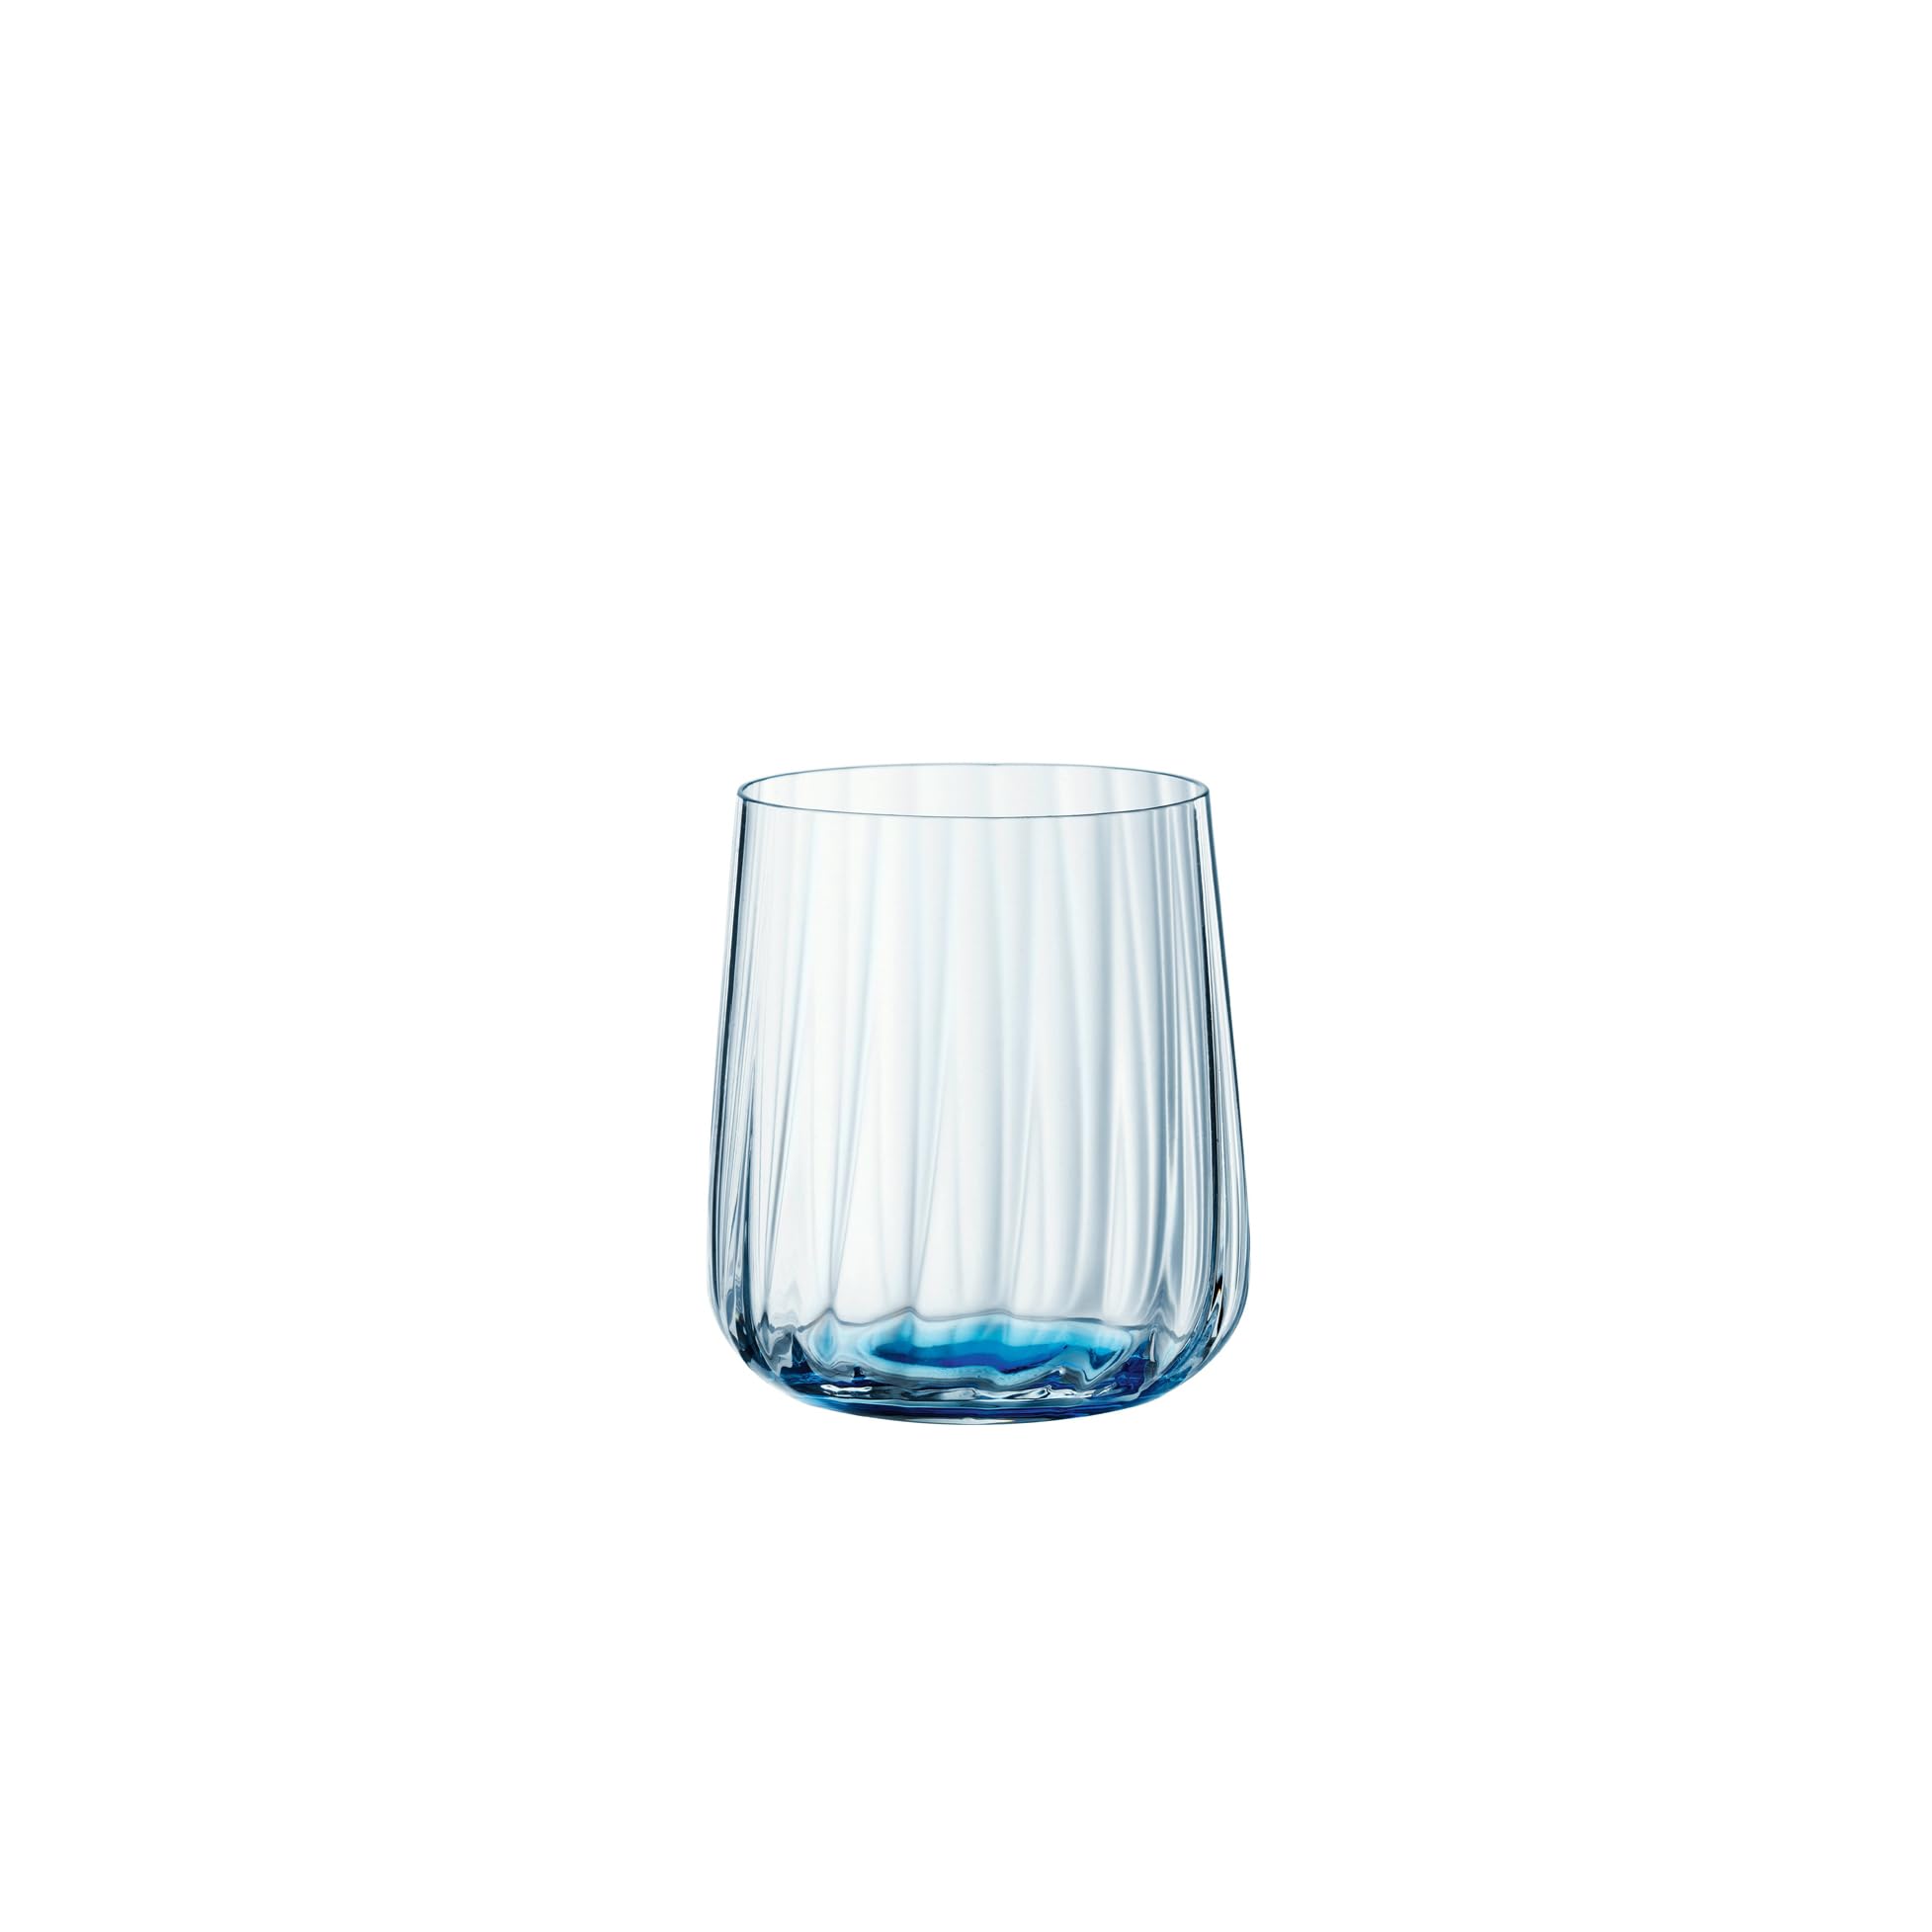 Spiegelau & Nachtmann, 2-teiliges Becher-Set, Blaue Trinkgläser, Kristallglas, 340 ml, Ocean, Lifestyle, 4453165